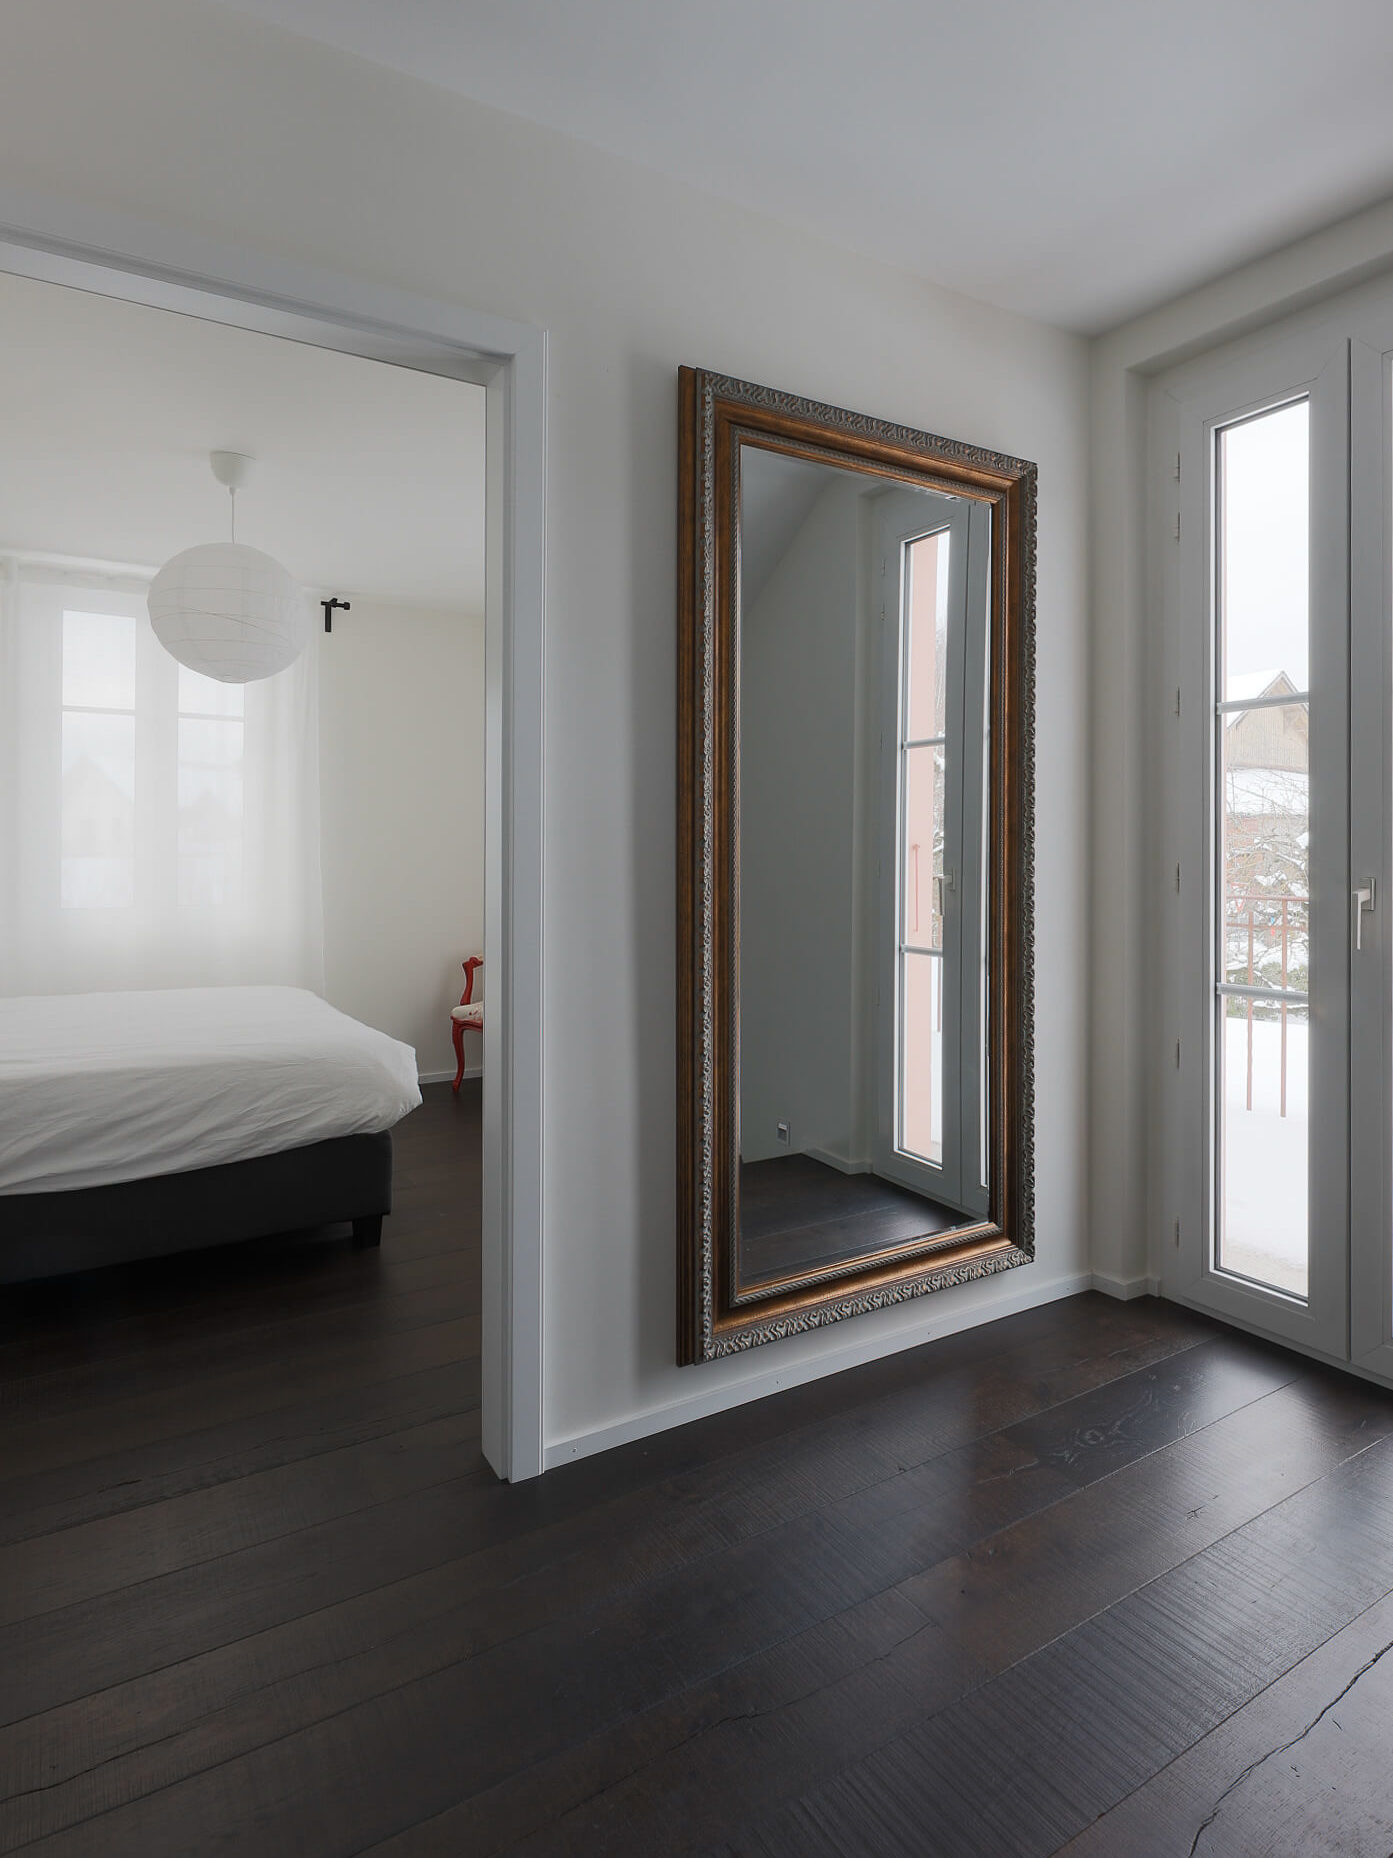 Couleur dans une maison rénovée à Savigny. Grand miroir devant une fenêtre et chambre d'invité en fond avec mobilier blanc